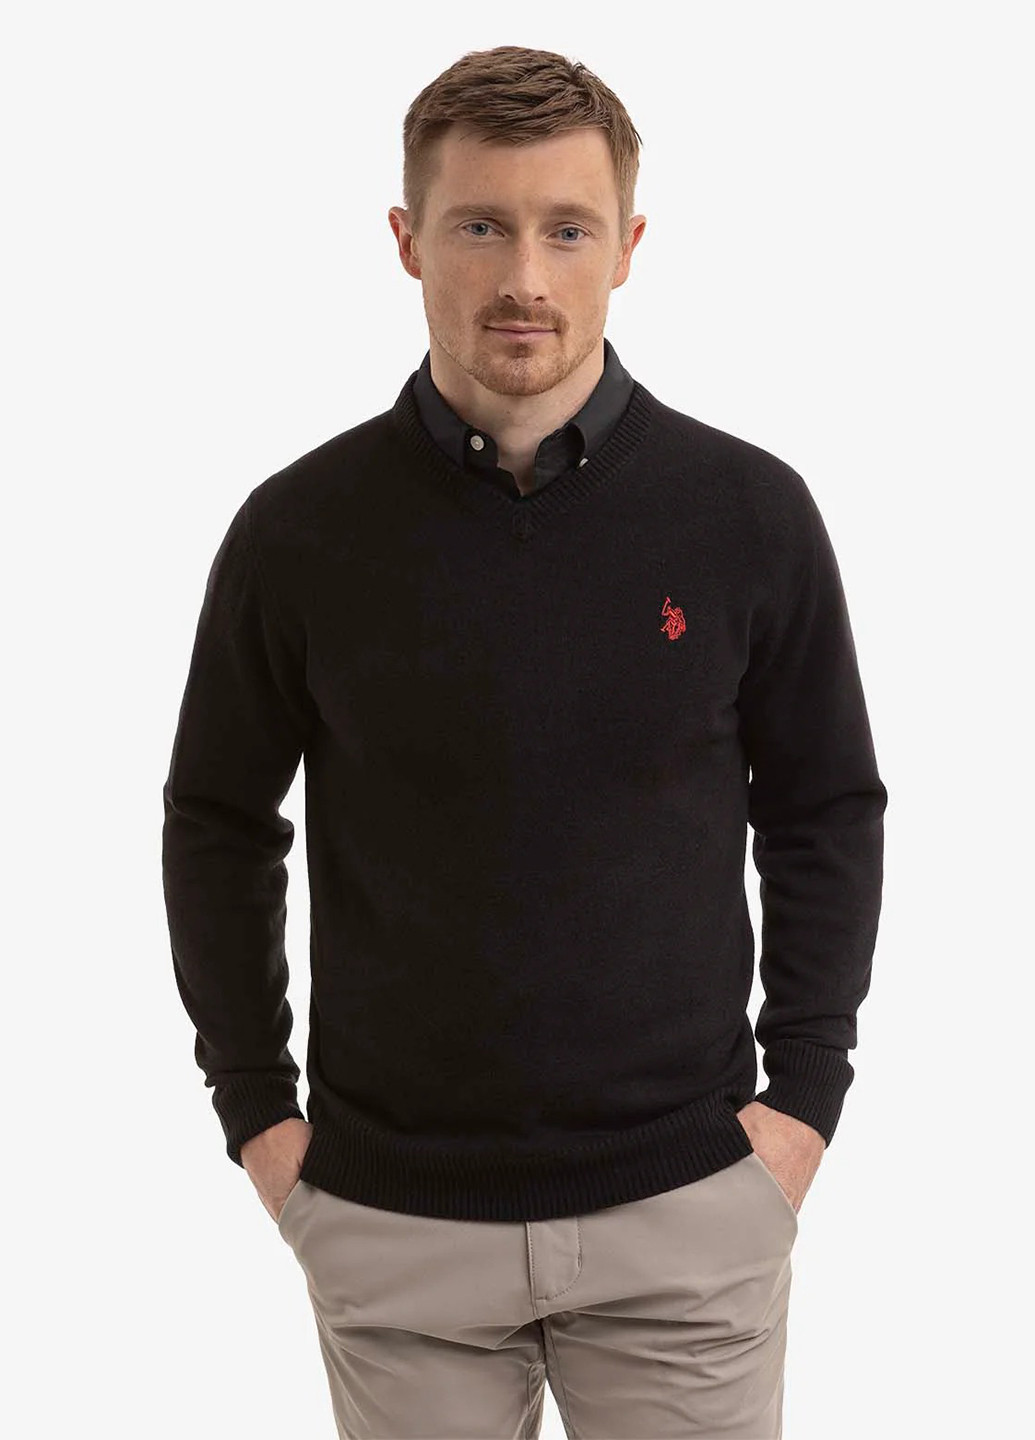 Черный демисезонный пуловер пуловер U.S. Polo Assn.